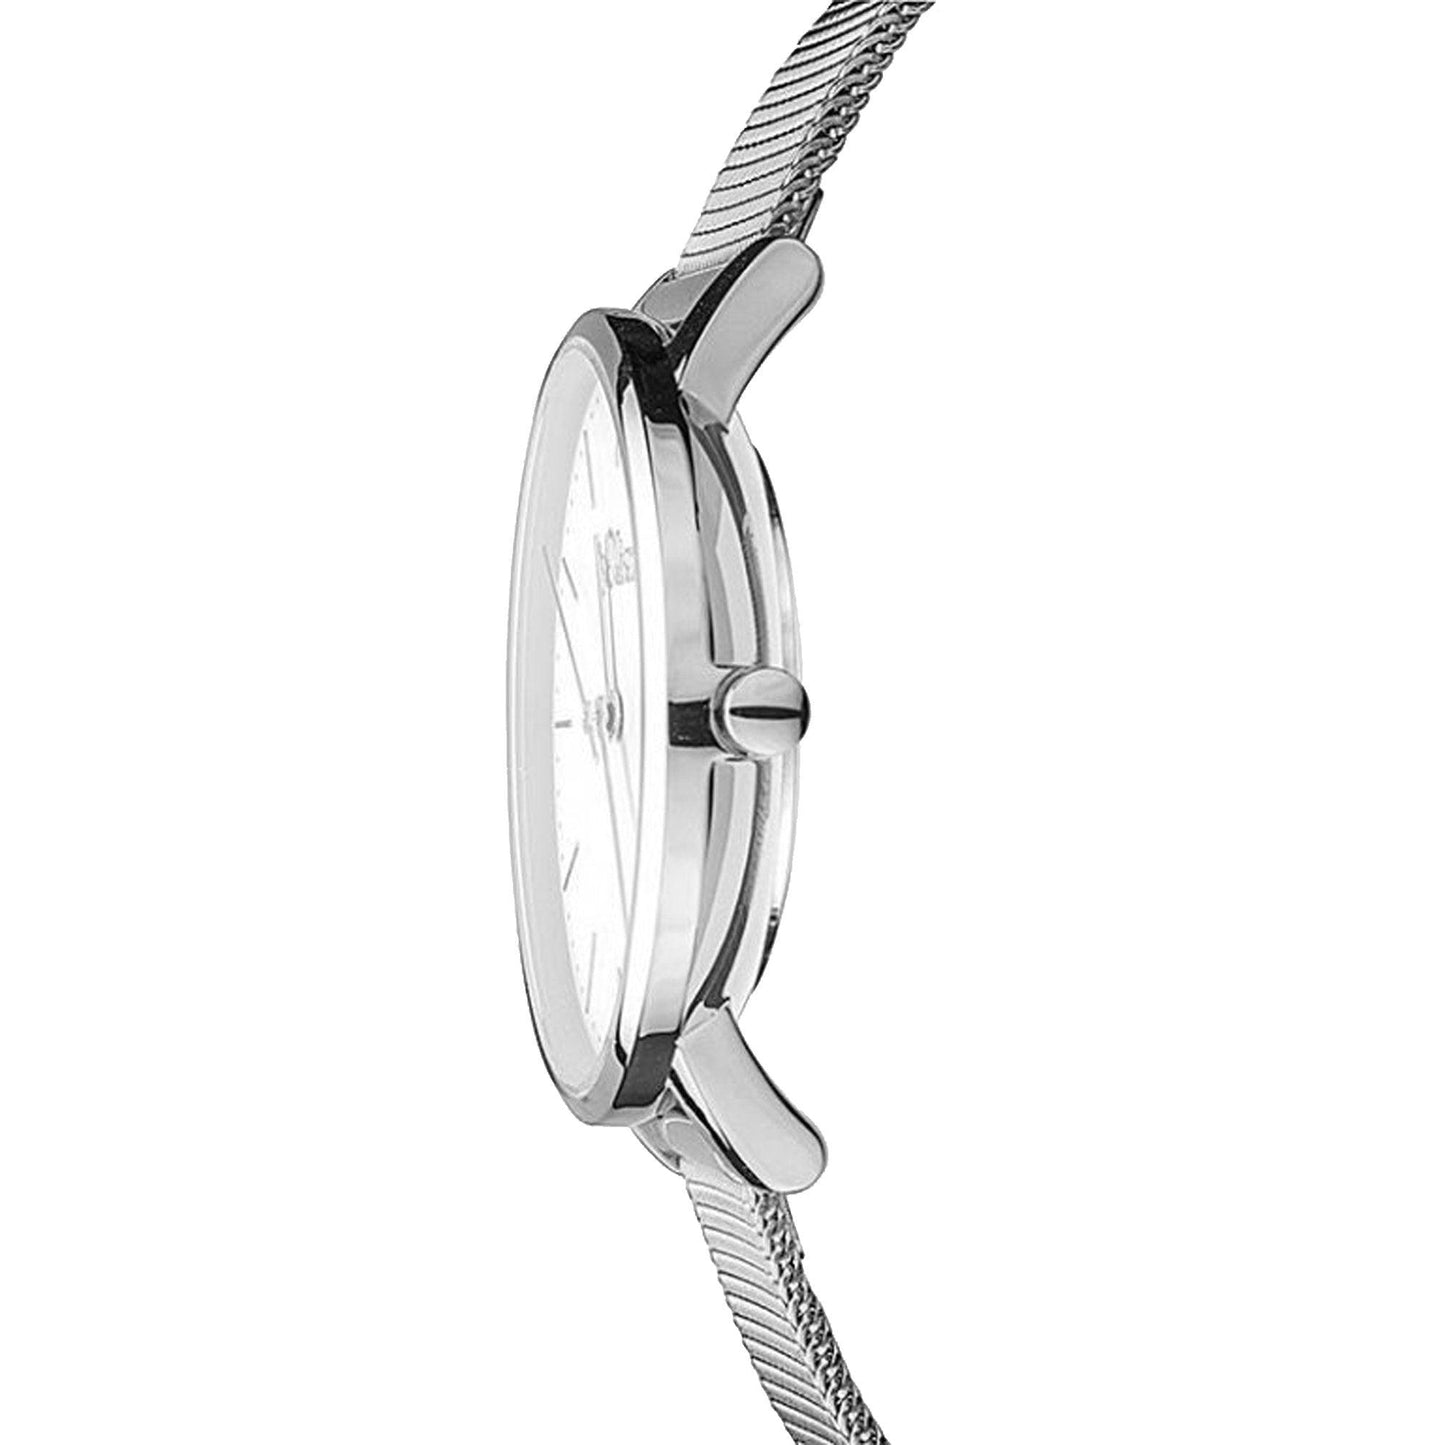 s.Oliver SO-3444-MQ orologio donna al quarzo - Kechiq Concept Boutique